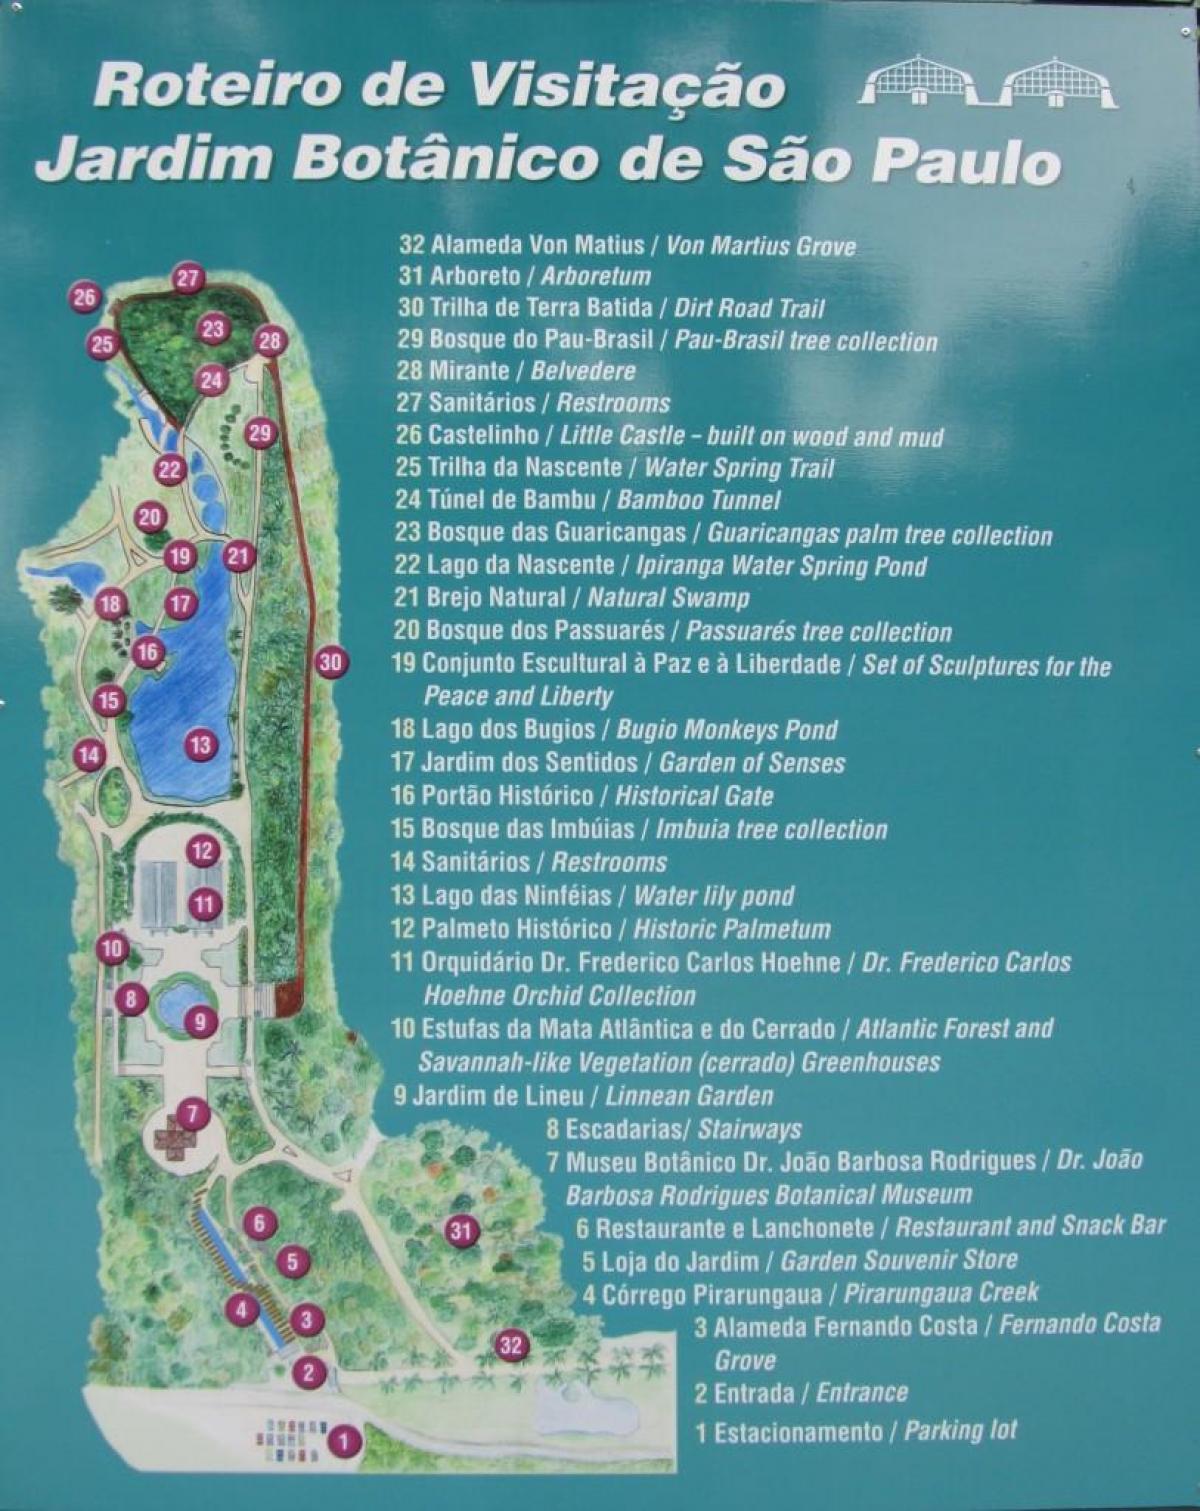 Mapa do jardim botânico de São Paulo